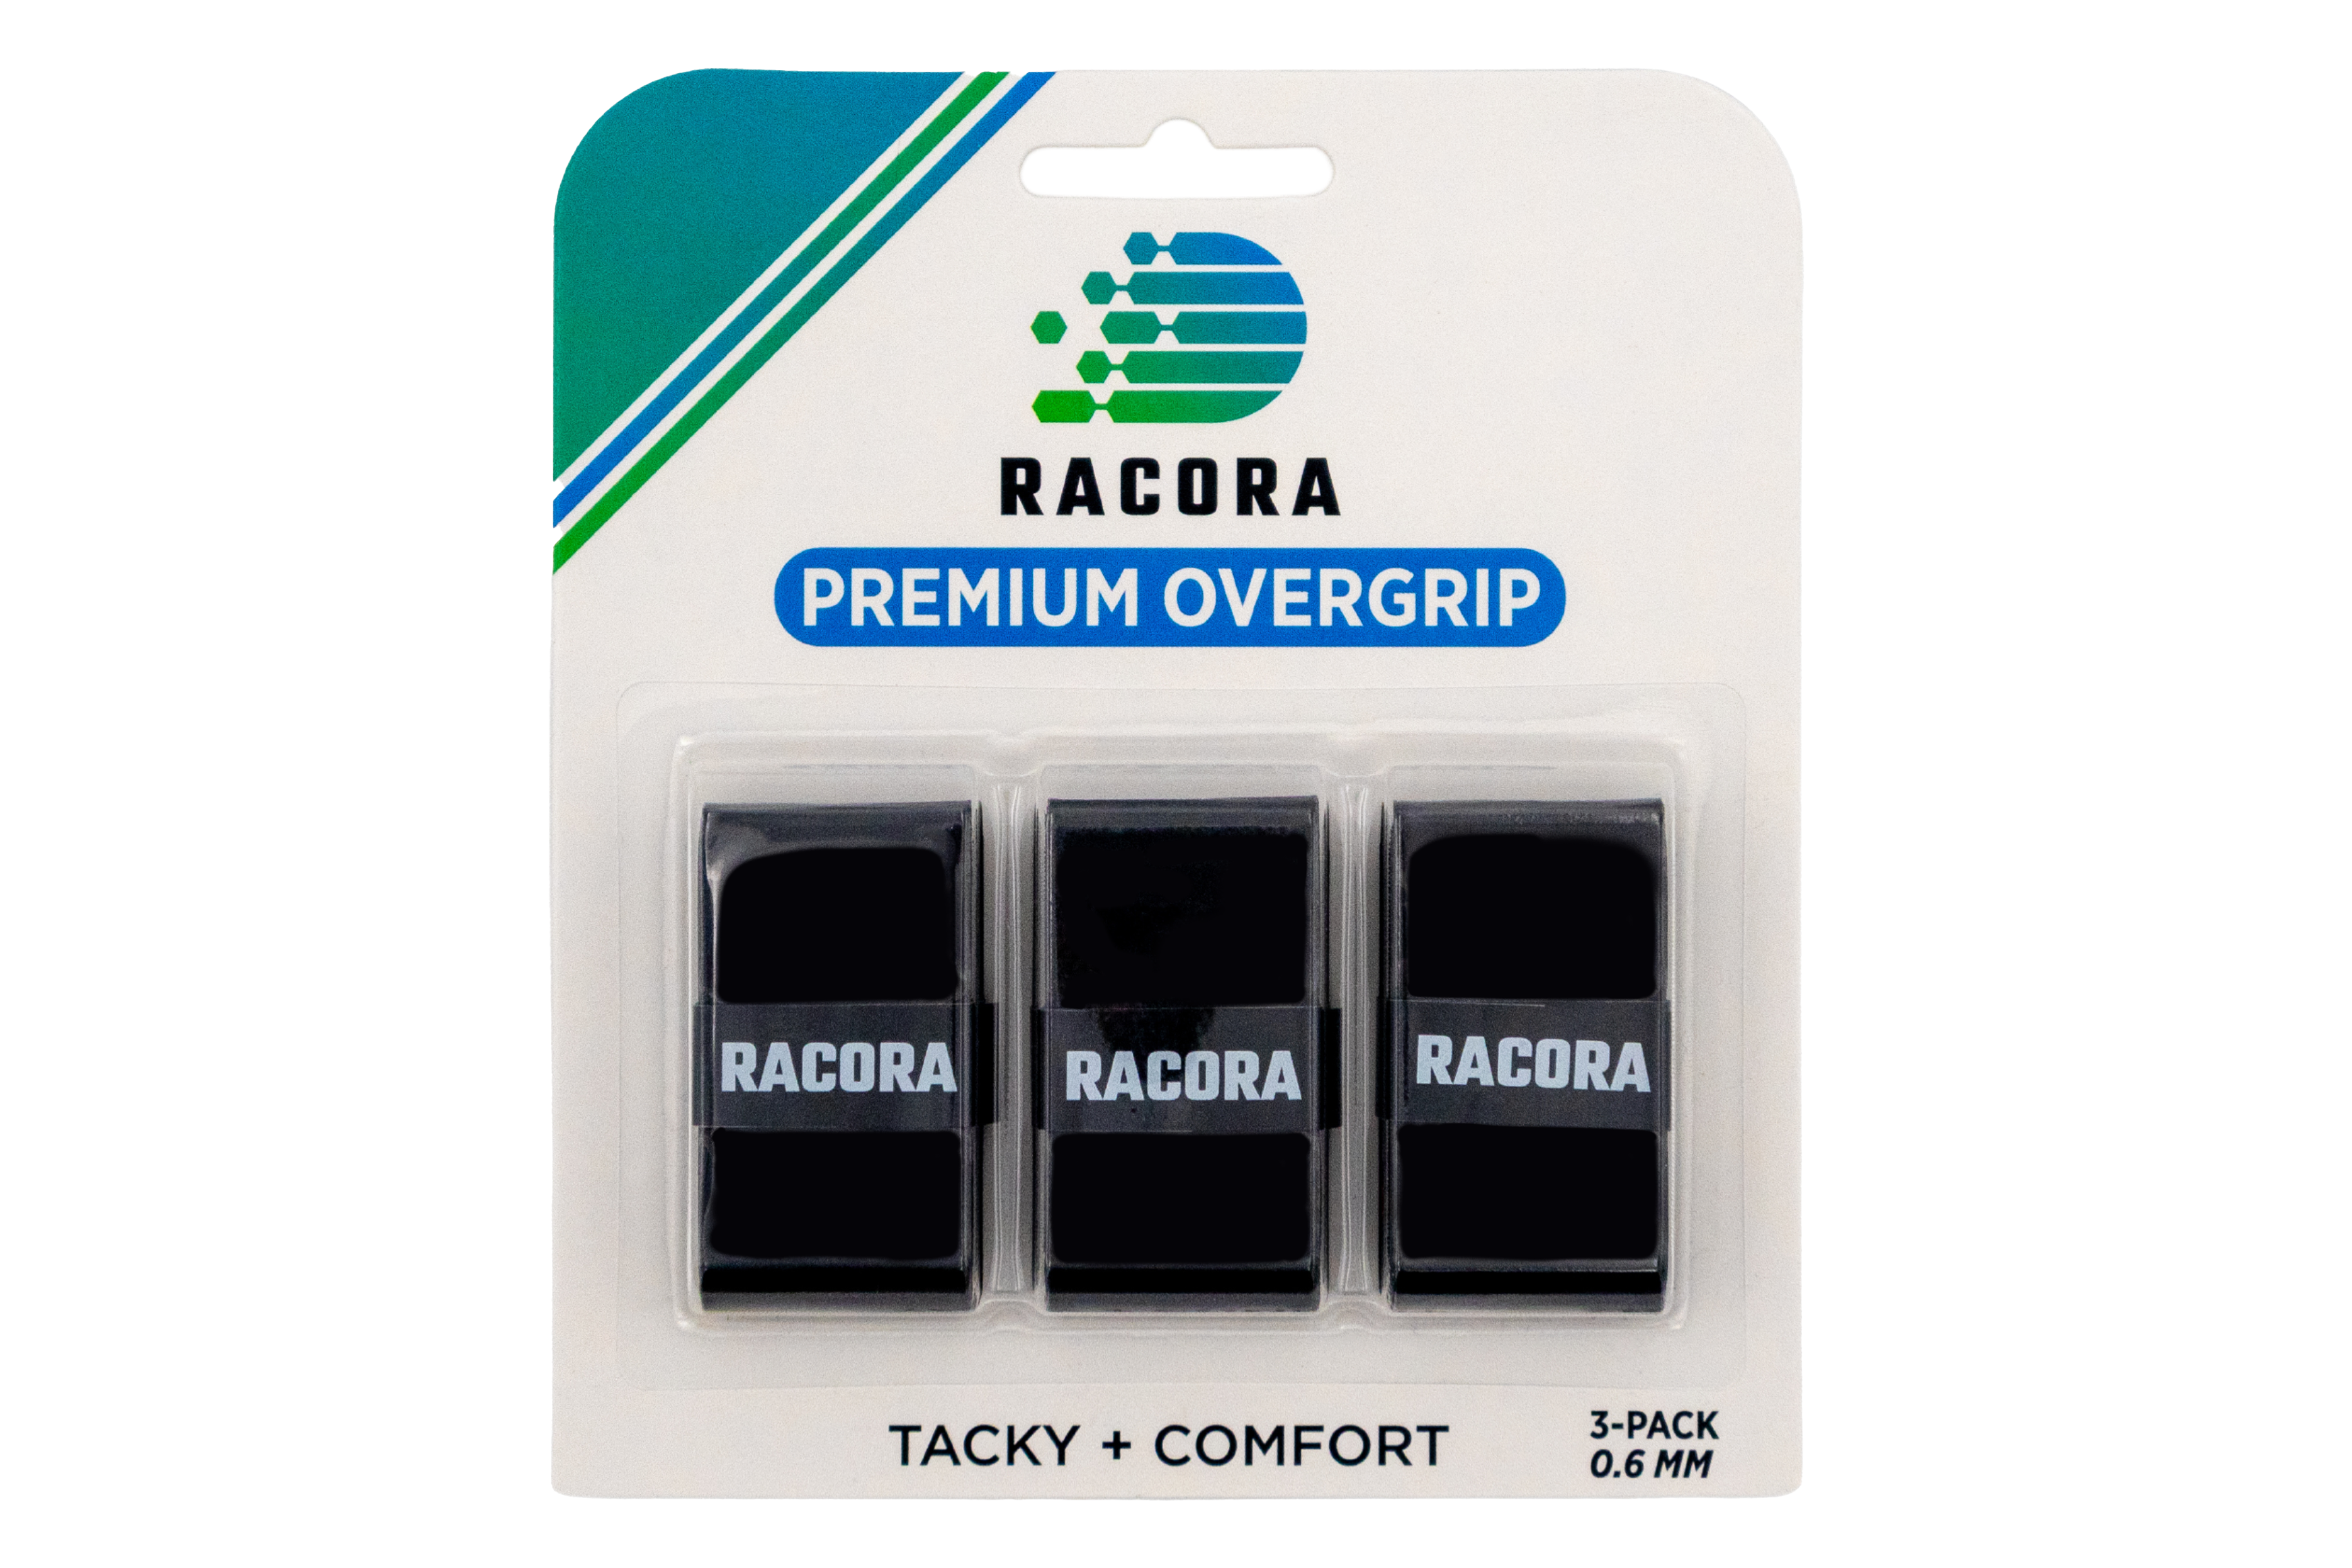 3-Pack of Racora black tennis overgrips in package